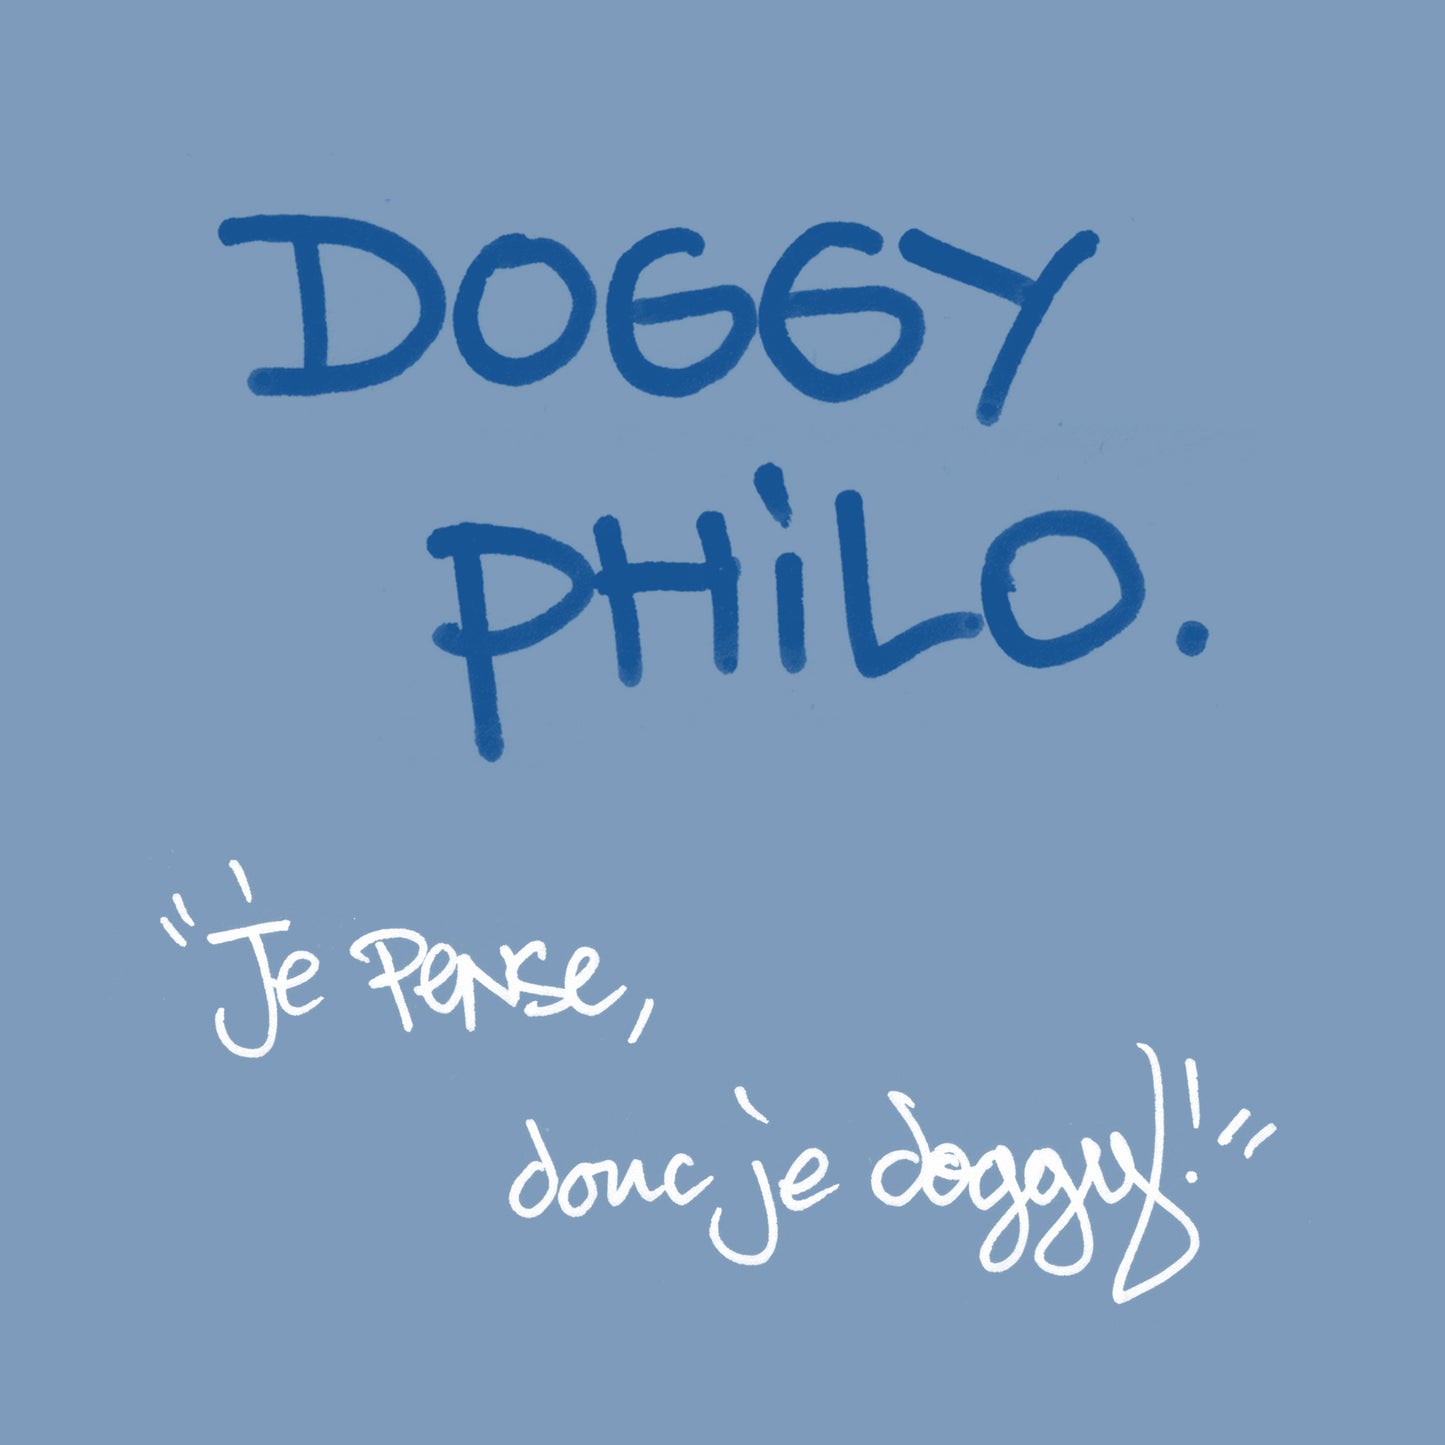 Doggy Philo